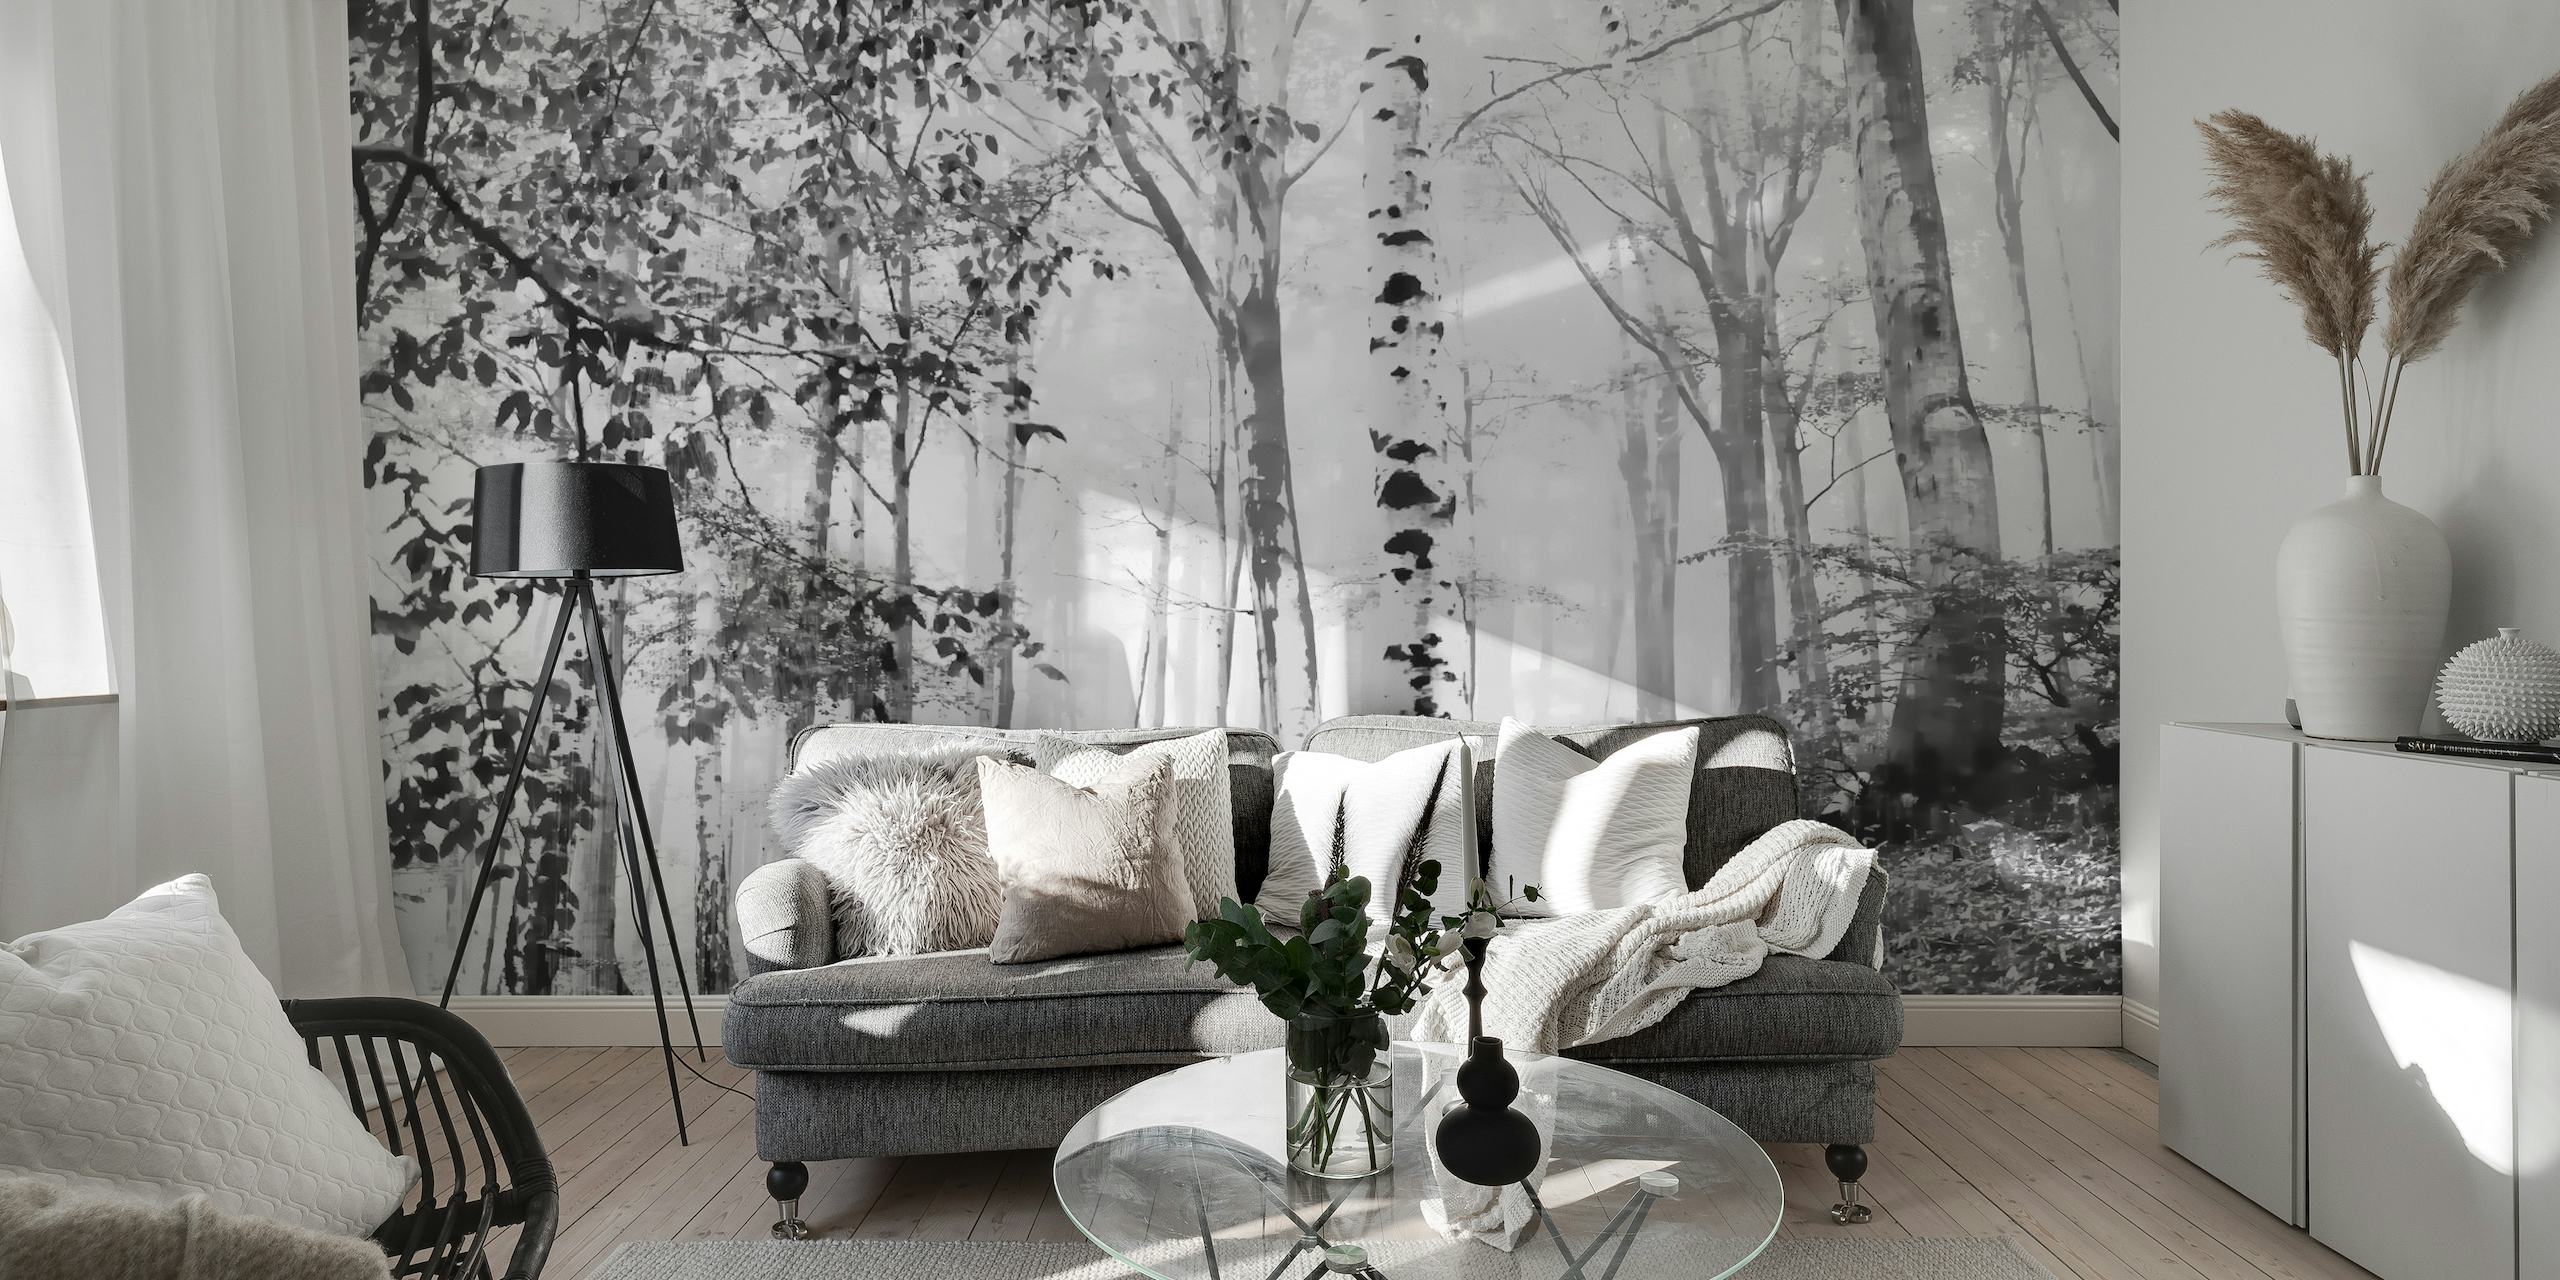 Misty birkeskov vægmaleri i sort og hvid, der skaber en fredfyldt skovscene til indretning